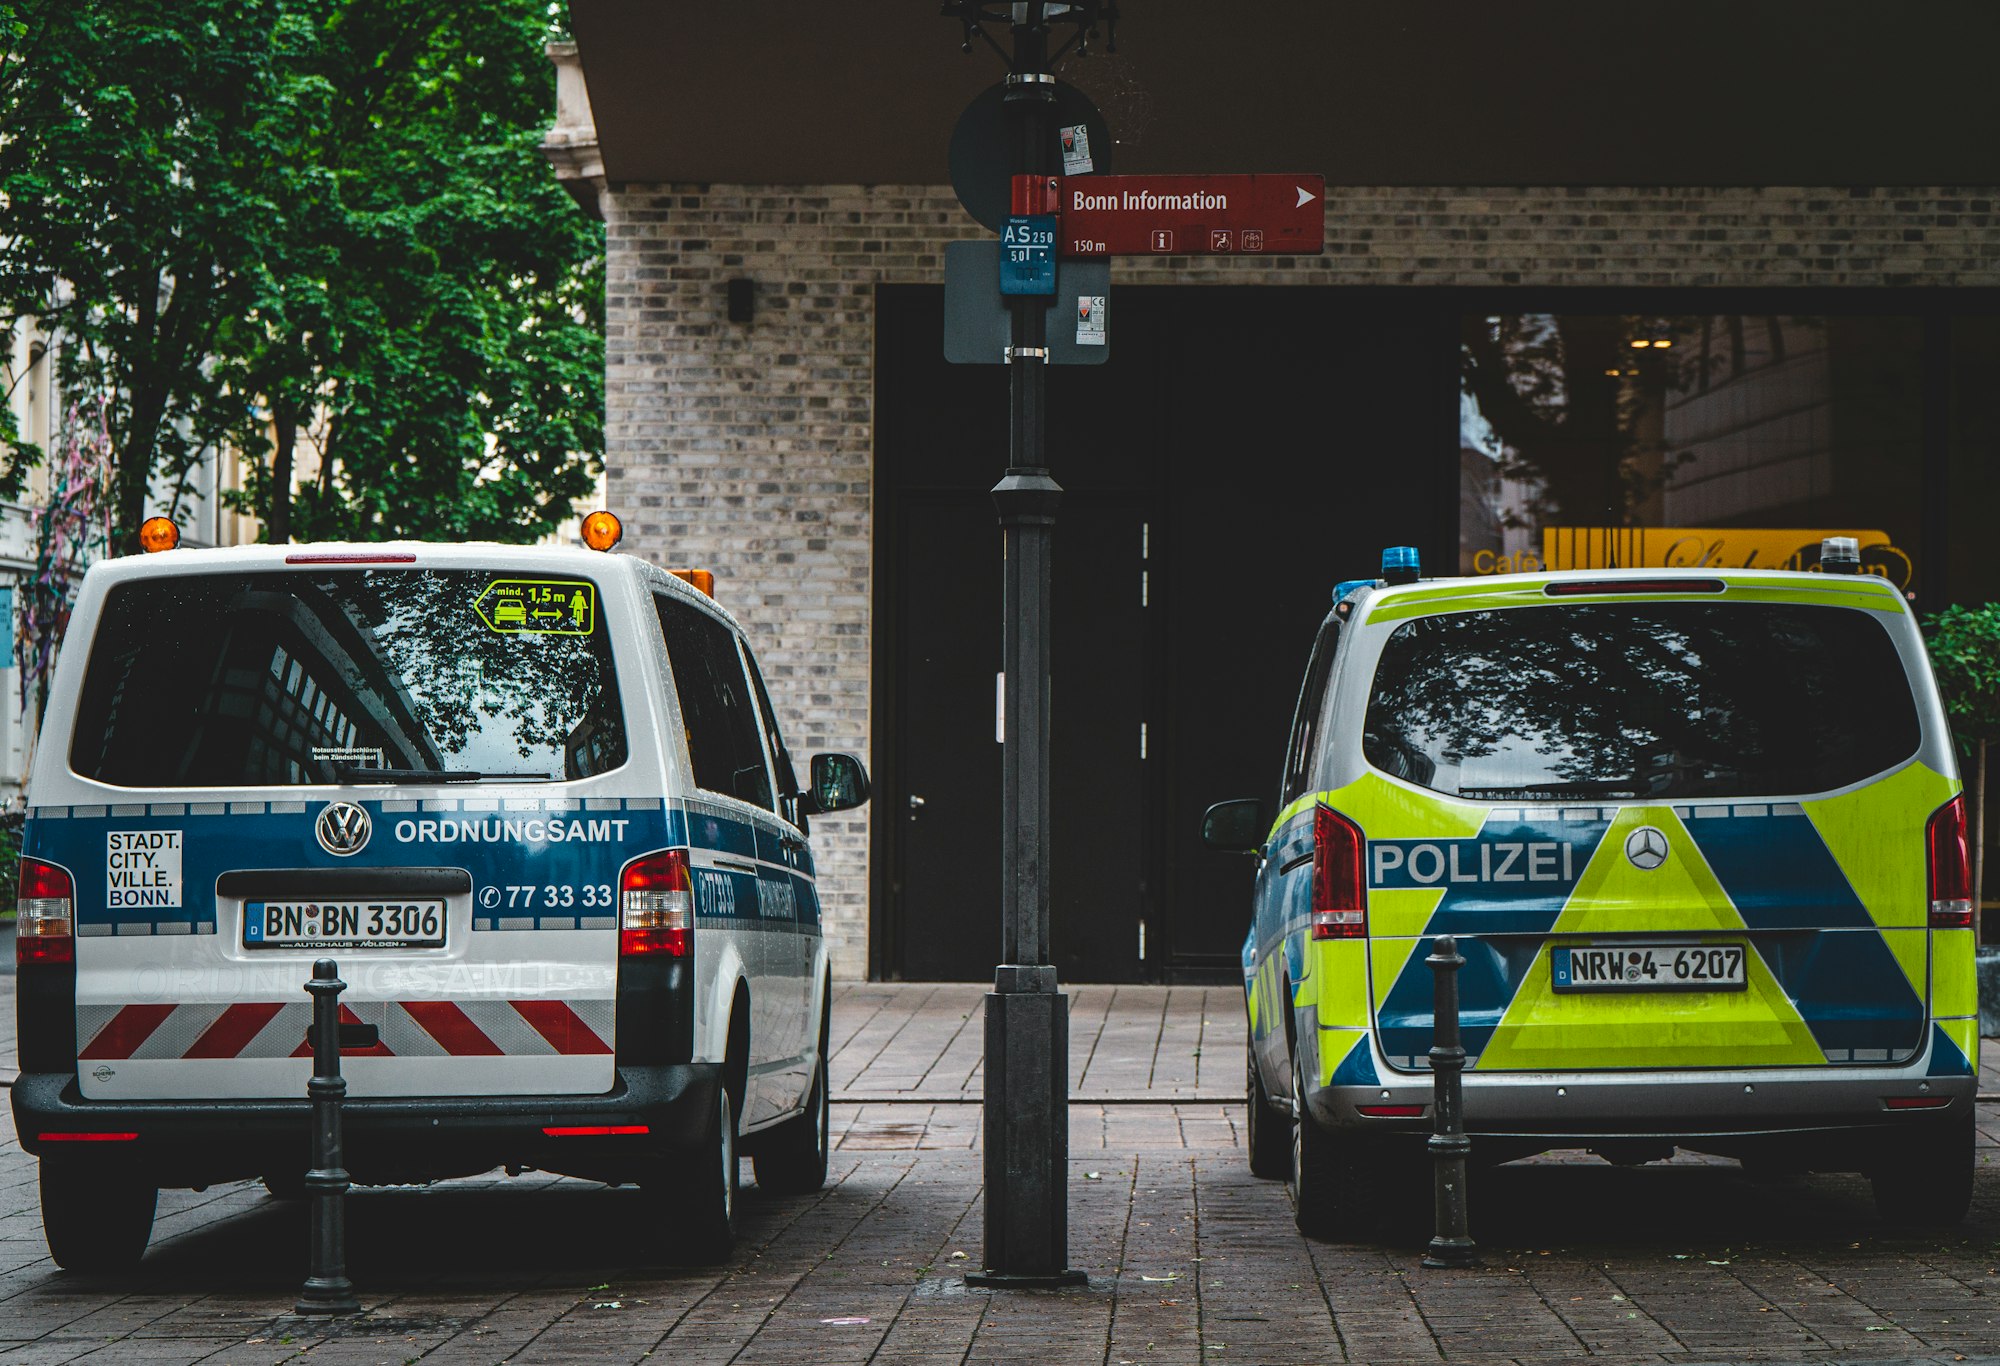 Links ein Ordnungsamtwagen und rechts ein Polizeiauto